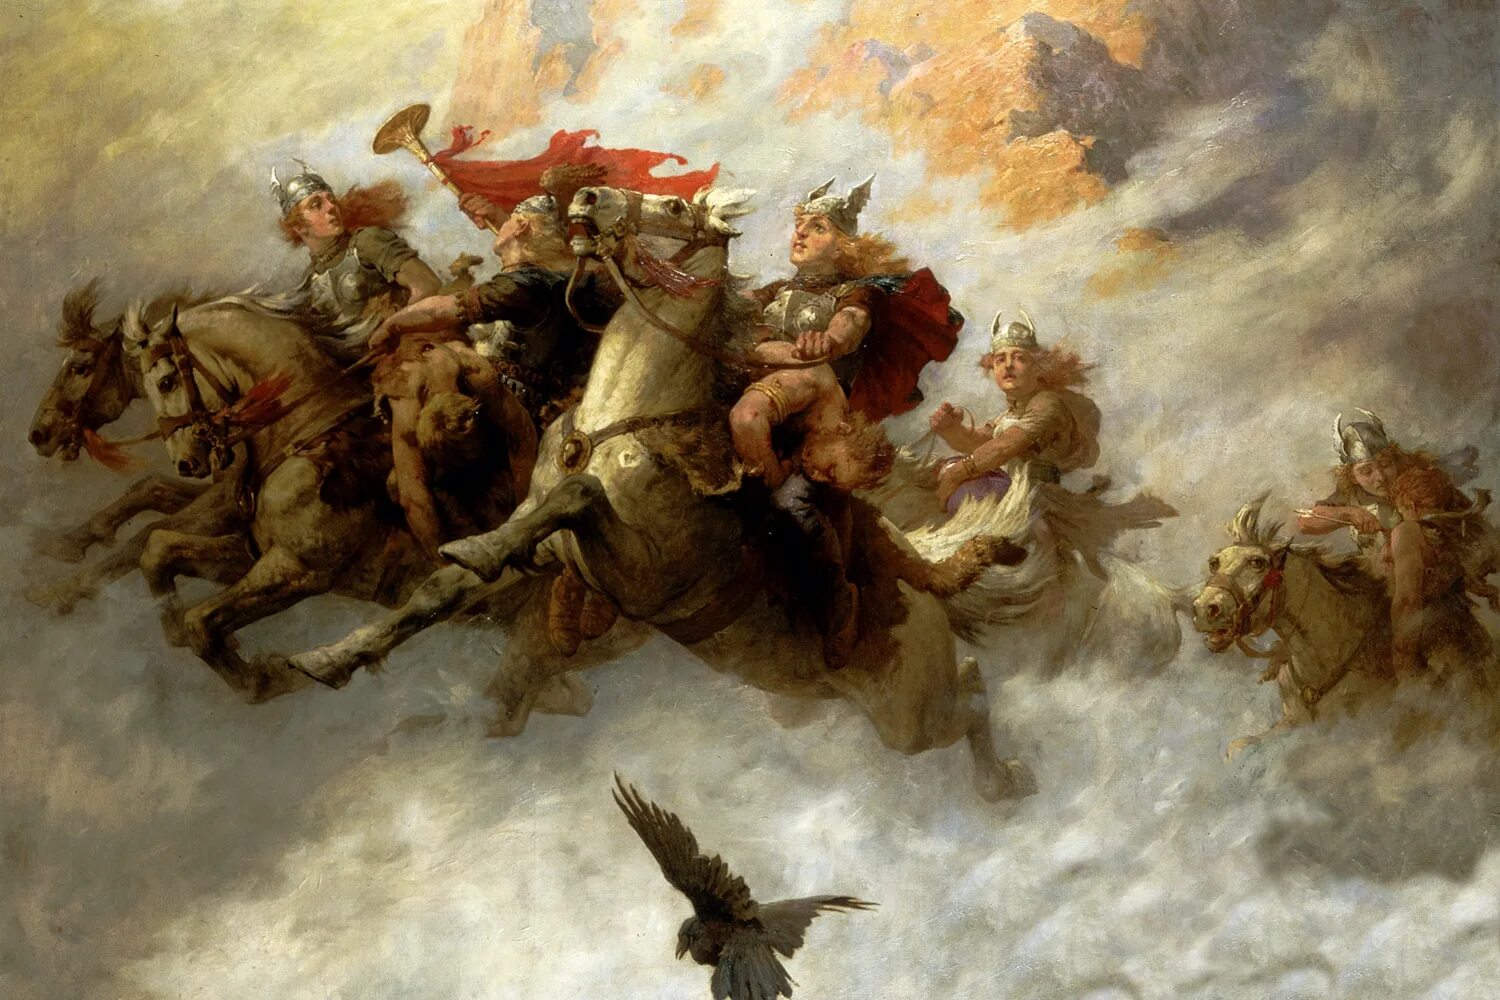 Боевые воины охота 1.16 m бесплатный ugc. Полёт валькирий Вагнера картина.